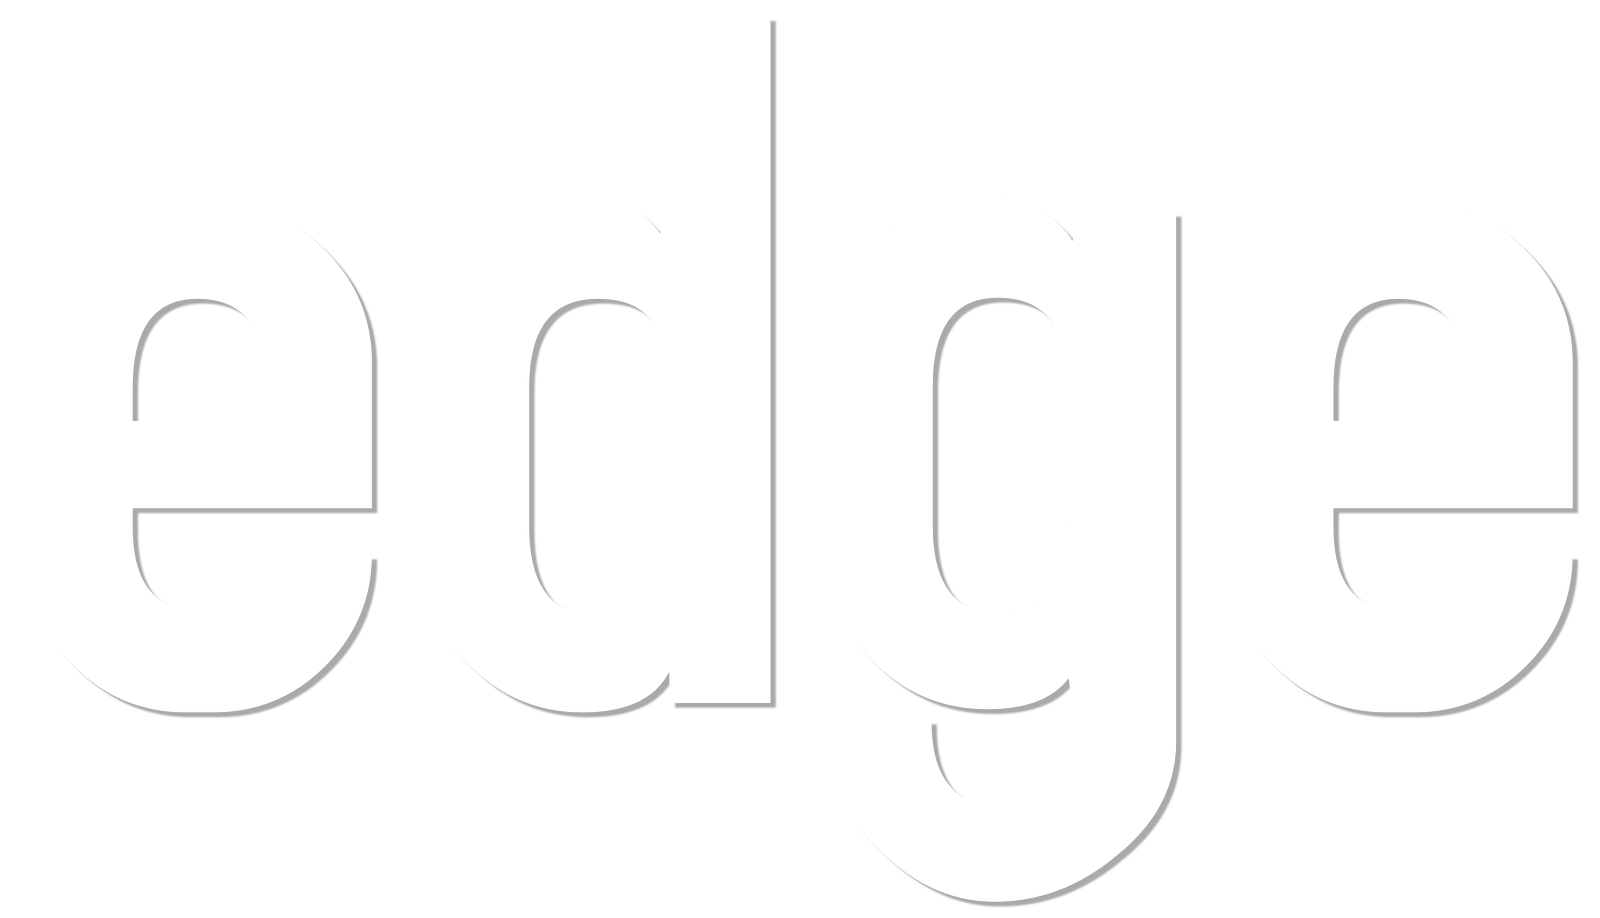 Edge Clothing logo